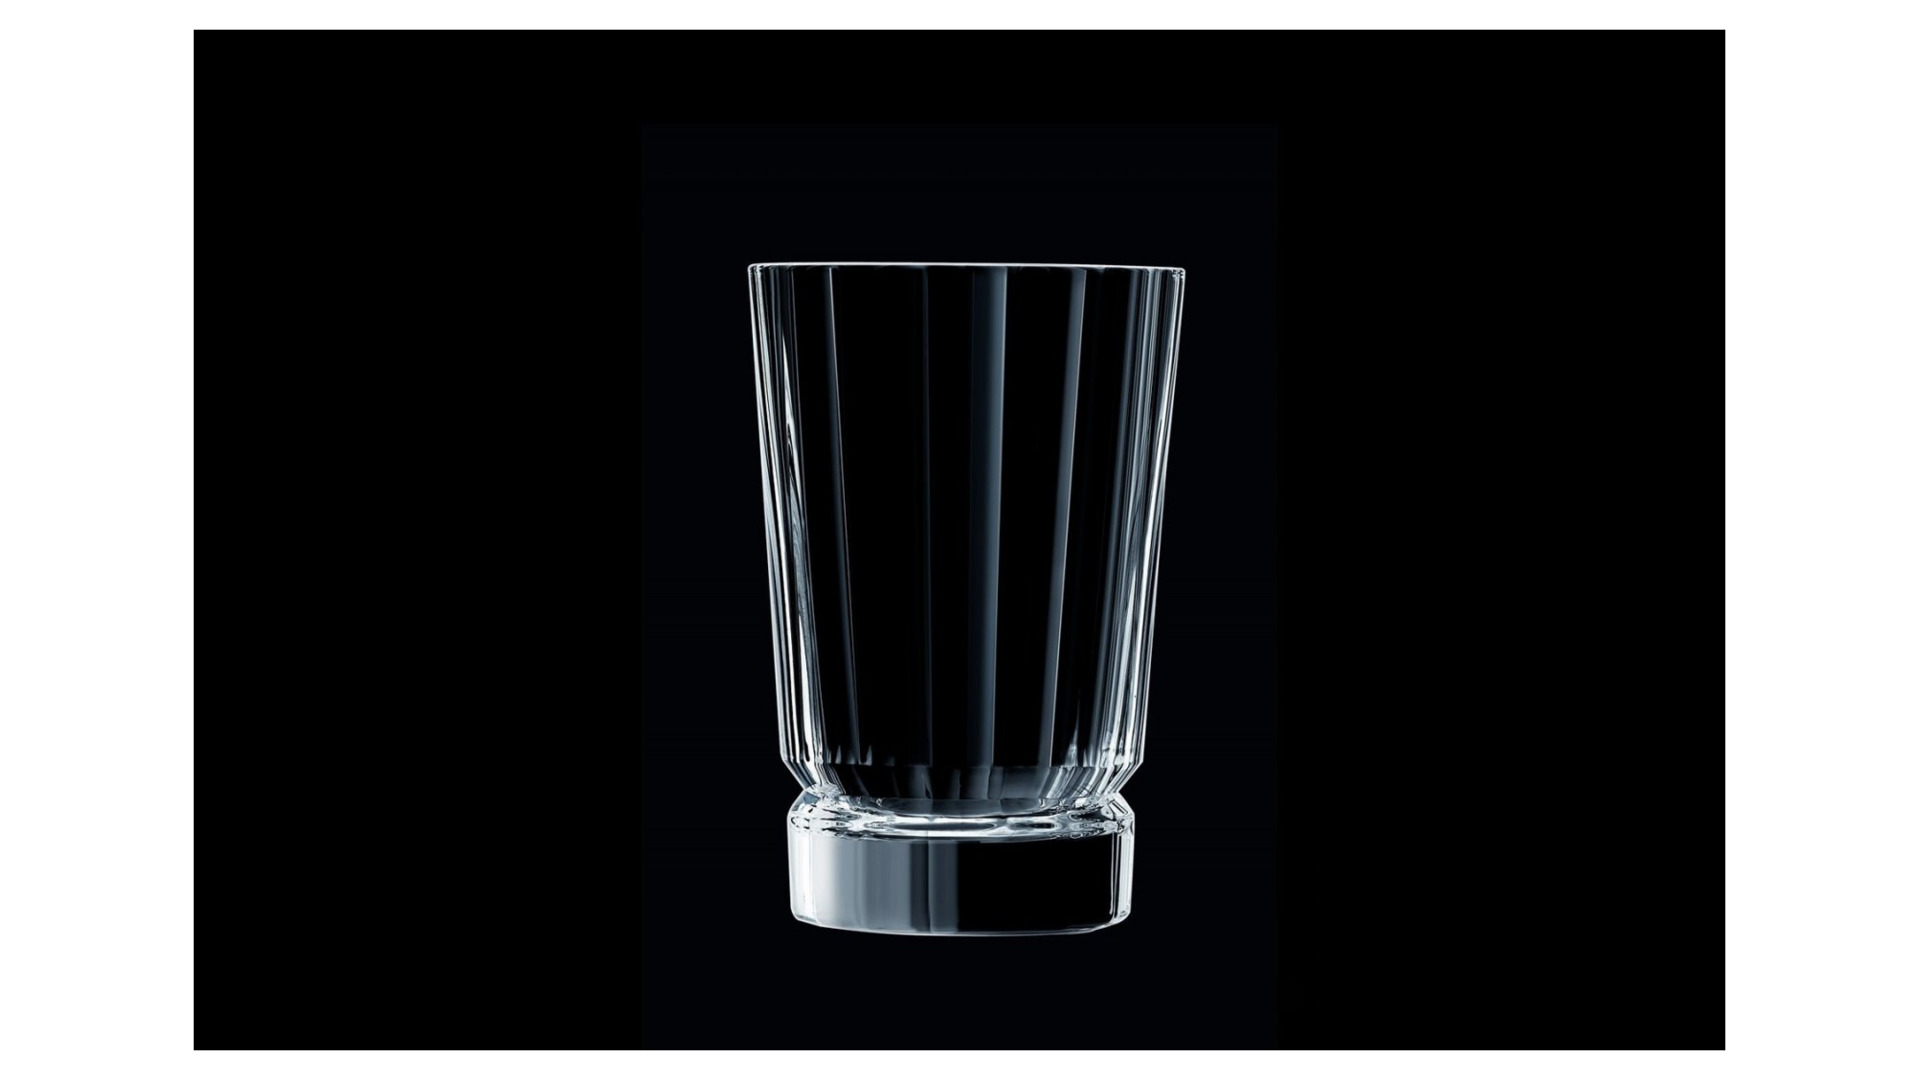 Набор стаканов для воды Cristal D'arques Macassar 360 мл, 6 шт, стекло хрустальное